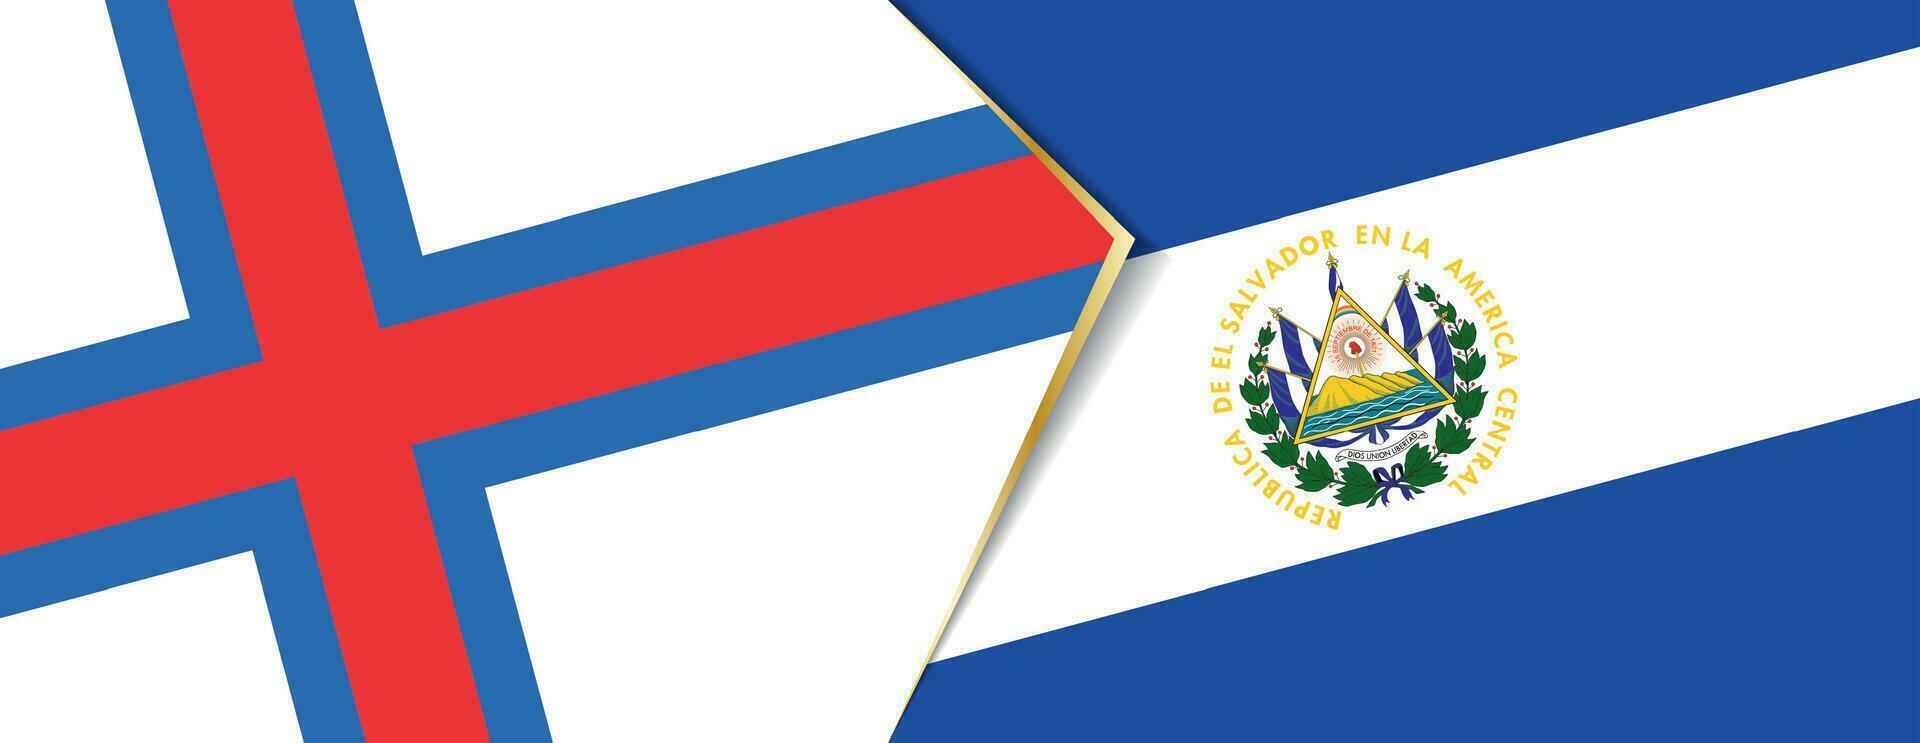 Faroe Islands and El Salvador flags, two vector flags.